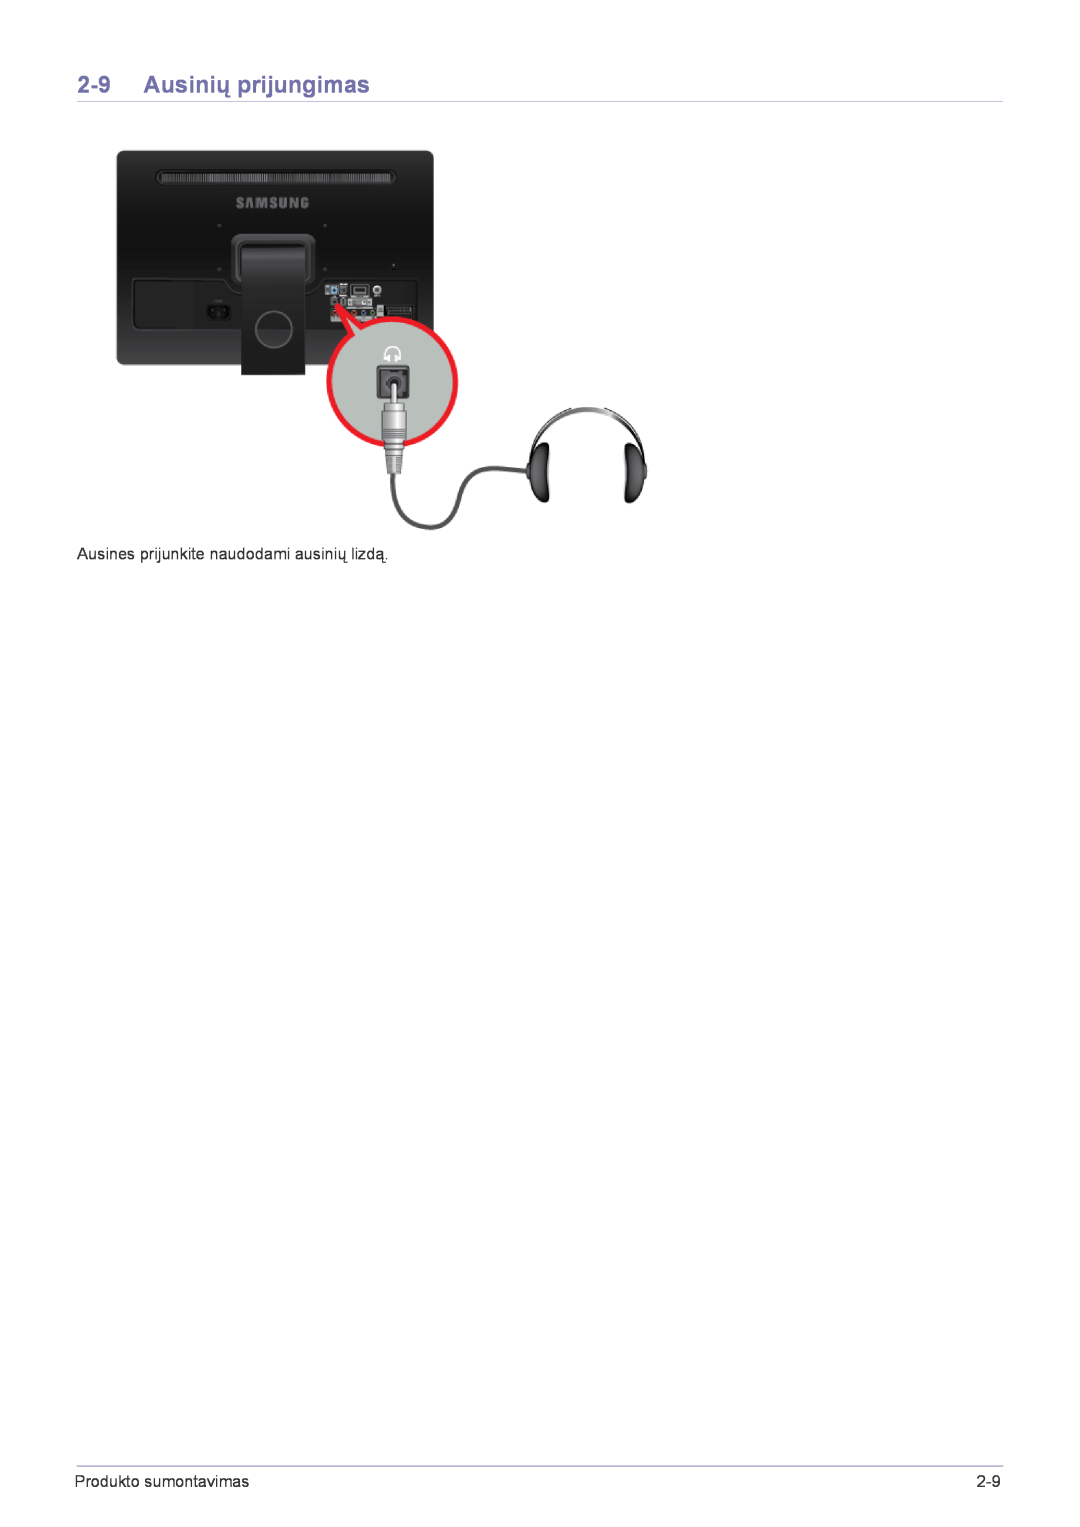 Samsung LS22FMDGF/EN manual Ausinių prijungimas, Ausines prijunkite naudodami ausinių lizdą, Produkto sumontavimas 